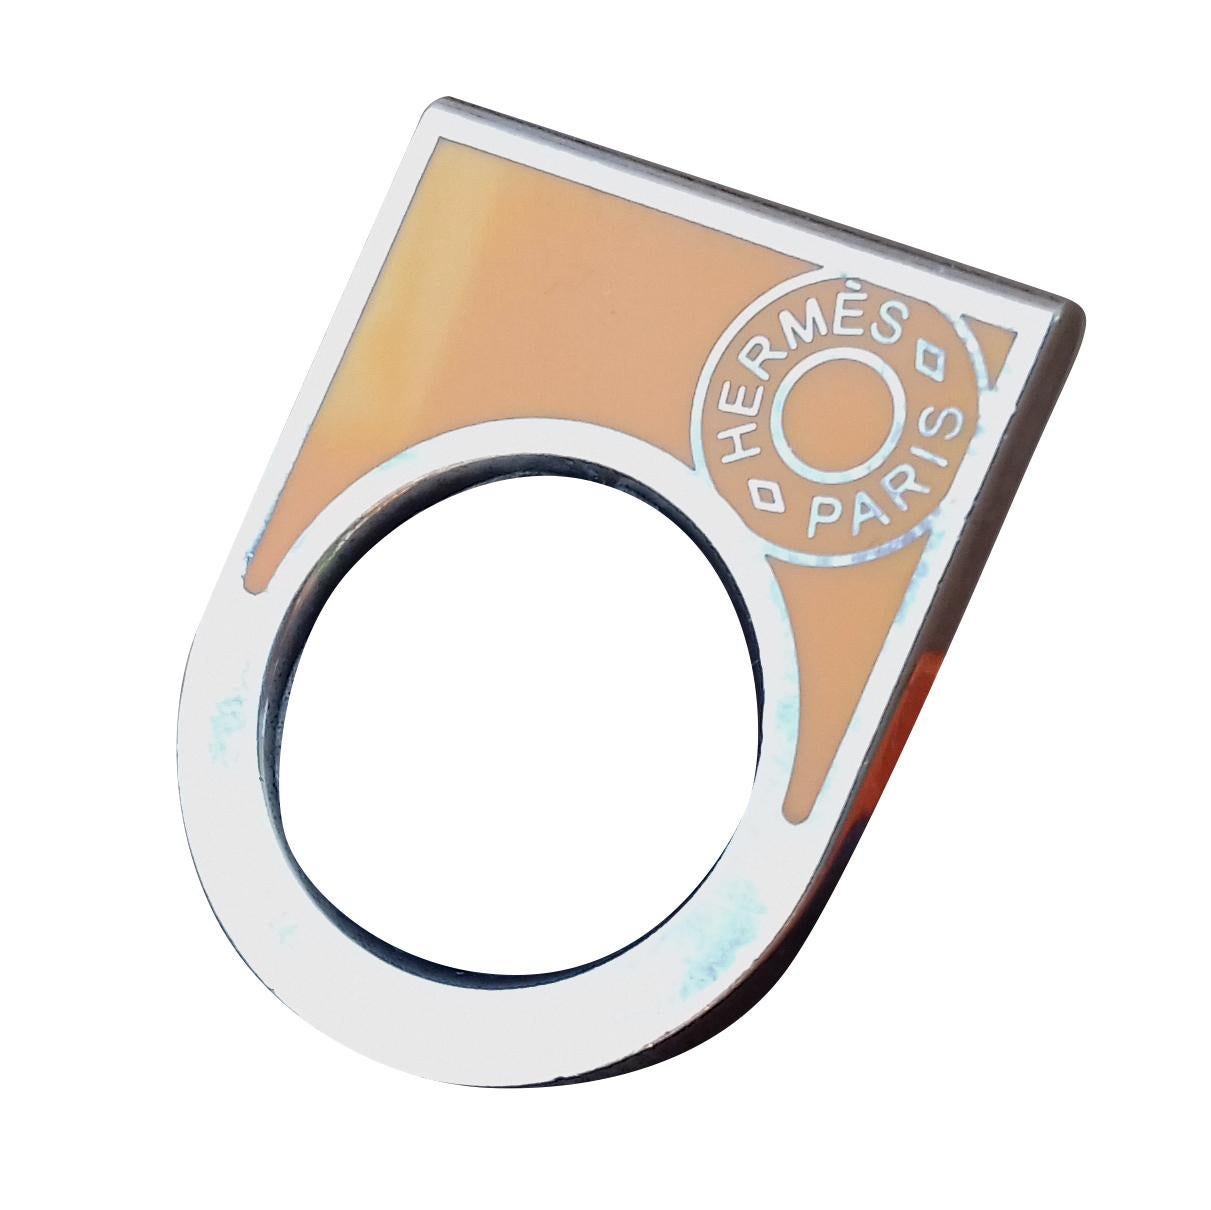 Hermès Ring Clou de selle Pendant Charm Scarf Ring Enamel Silver Size 49 in Box